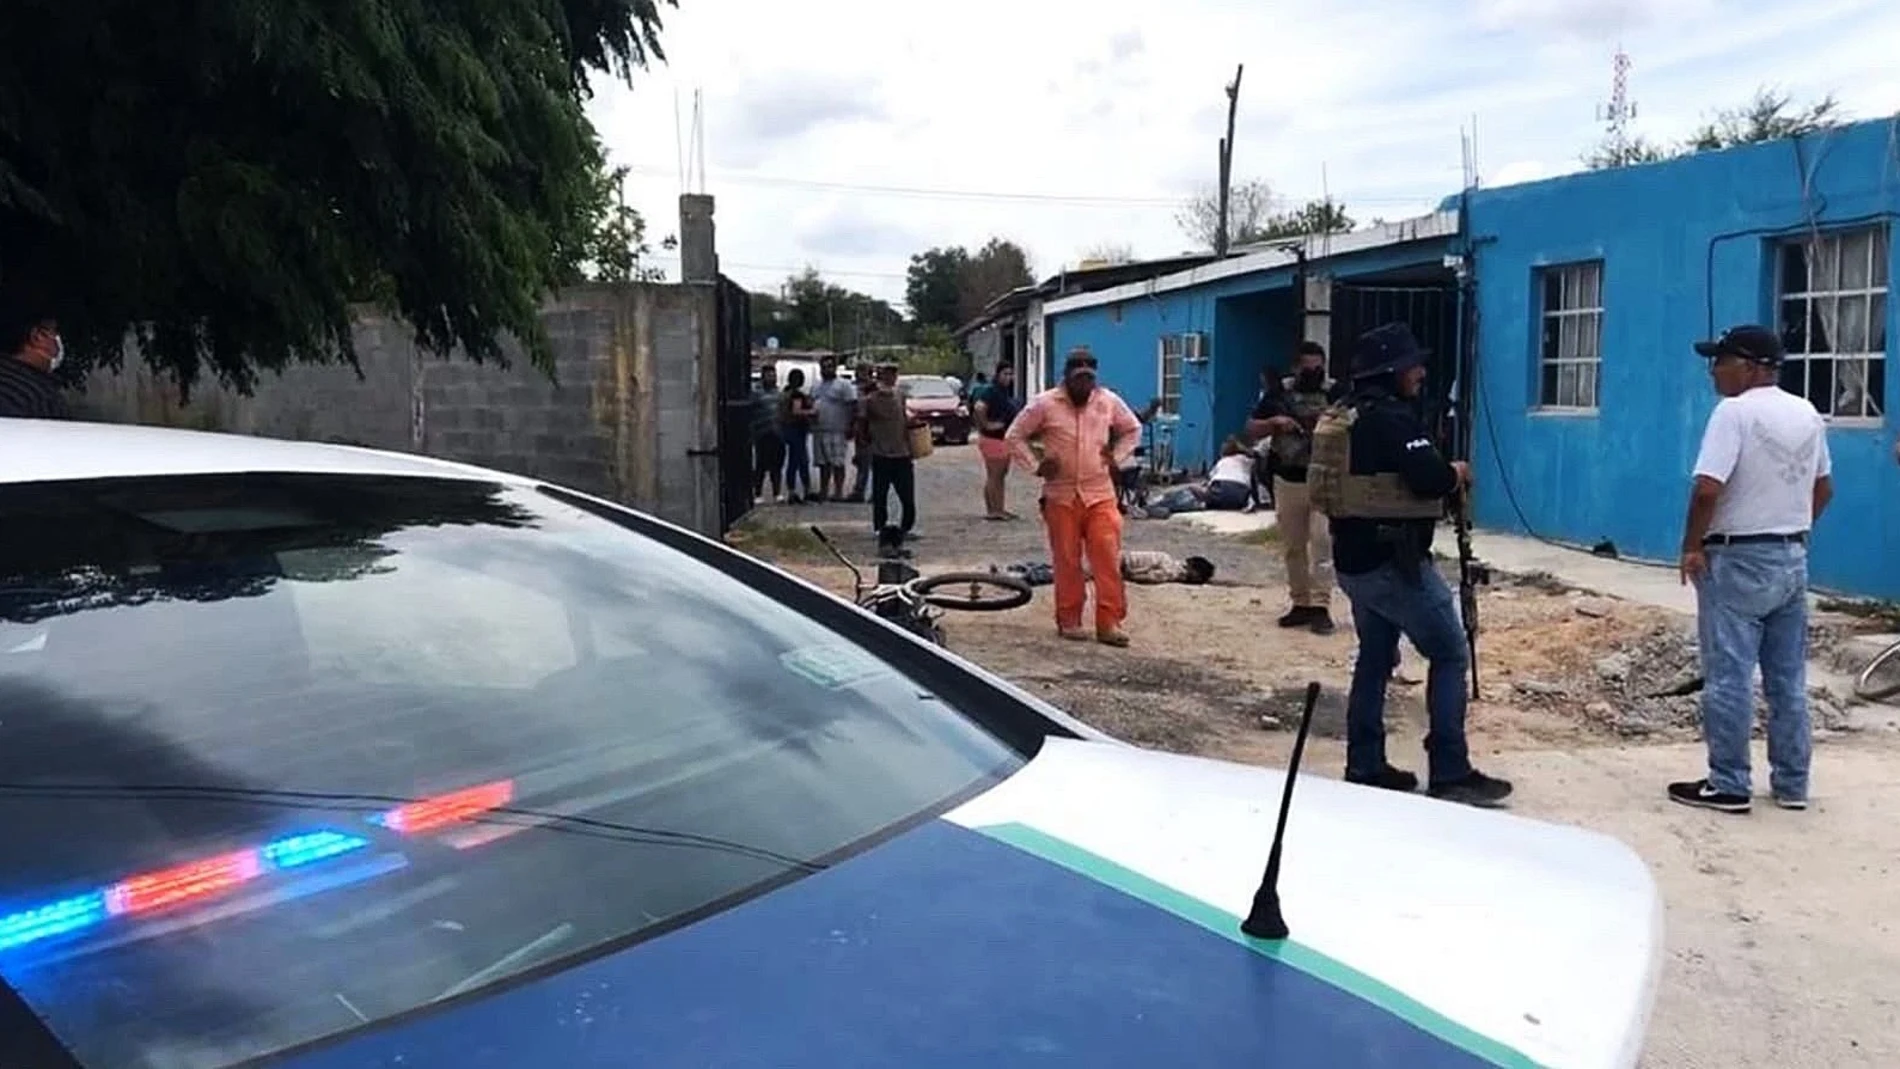 ATENCIÓN EDITORES: CONTENIDO GRÁFICO EXPLÍCITO - MEX5039. REYNOSA (MÉXICO), 19/06/2021.- Elementos de la policía estatal resguardan el área donde un comando armado asesinó a varias personas hoy, en la ciudad de Reynosa, estado de Tamaulipas (México). Al menos 15 personas murieron este sábado en diversos ataques violentos de grupos criminales en la ciudad mexicana de Reynosa, Tamaulipas, fronteriza con Texas, Estados Unidos. EFE/José Martínez